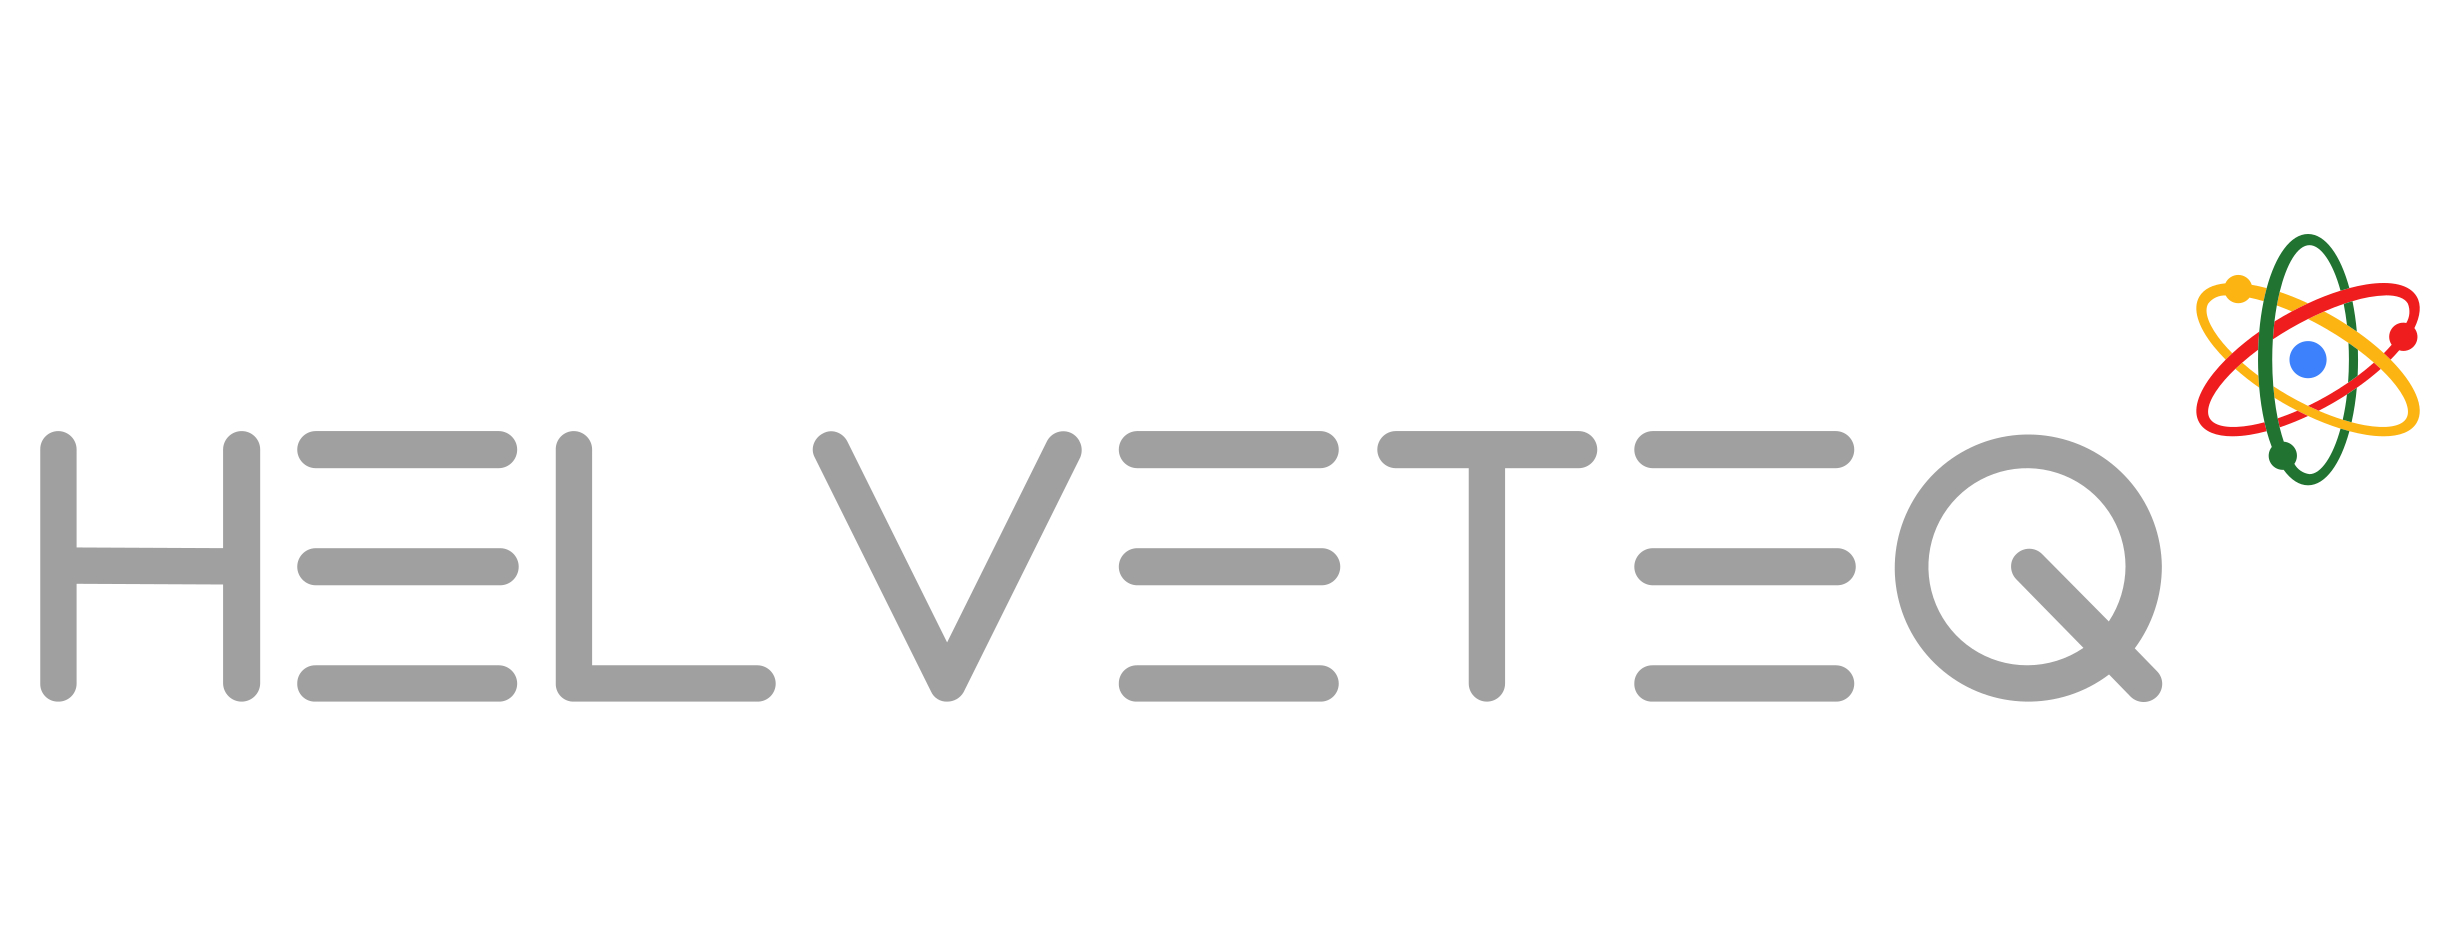 Logo Helveteq AG